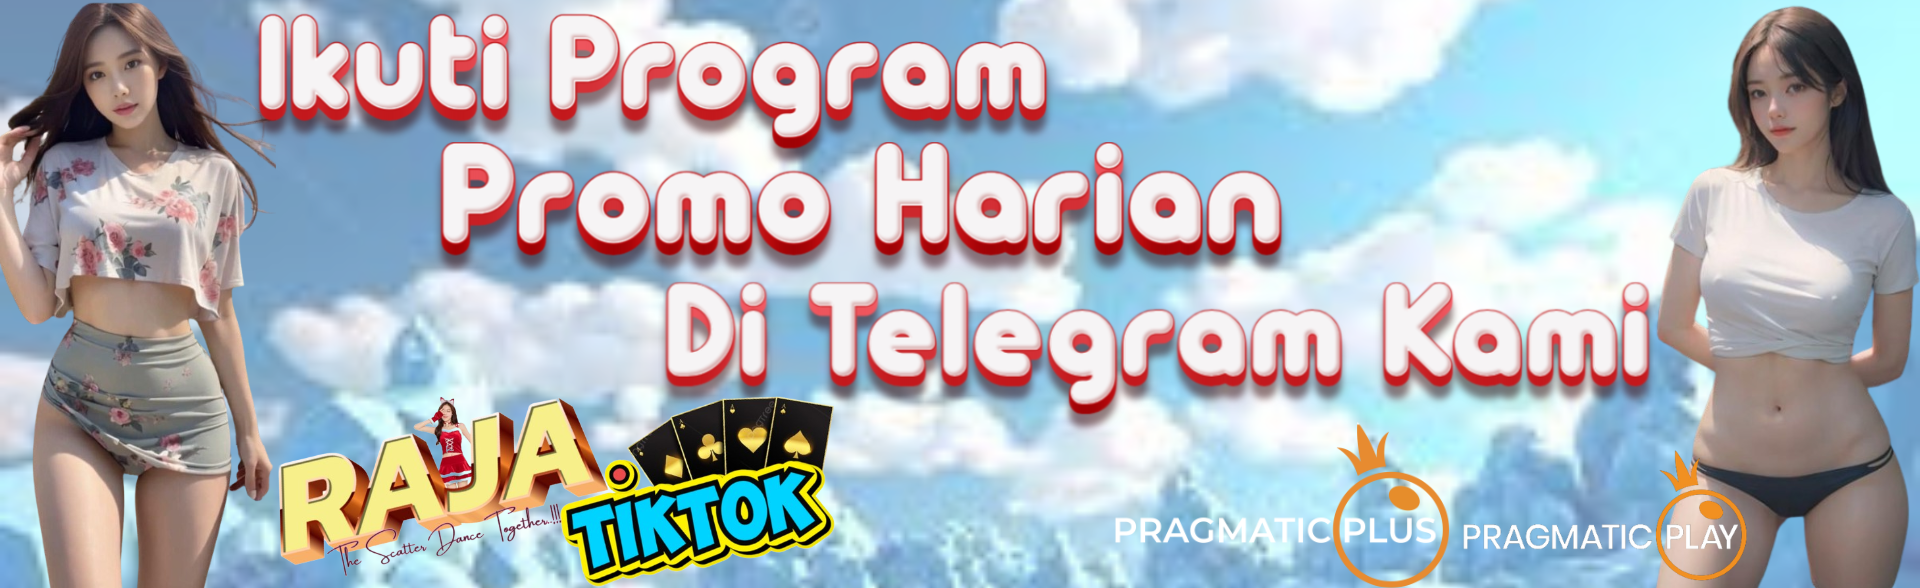 Promo Telegram